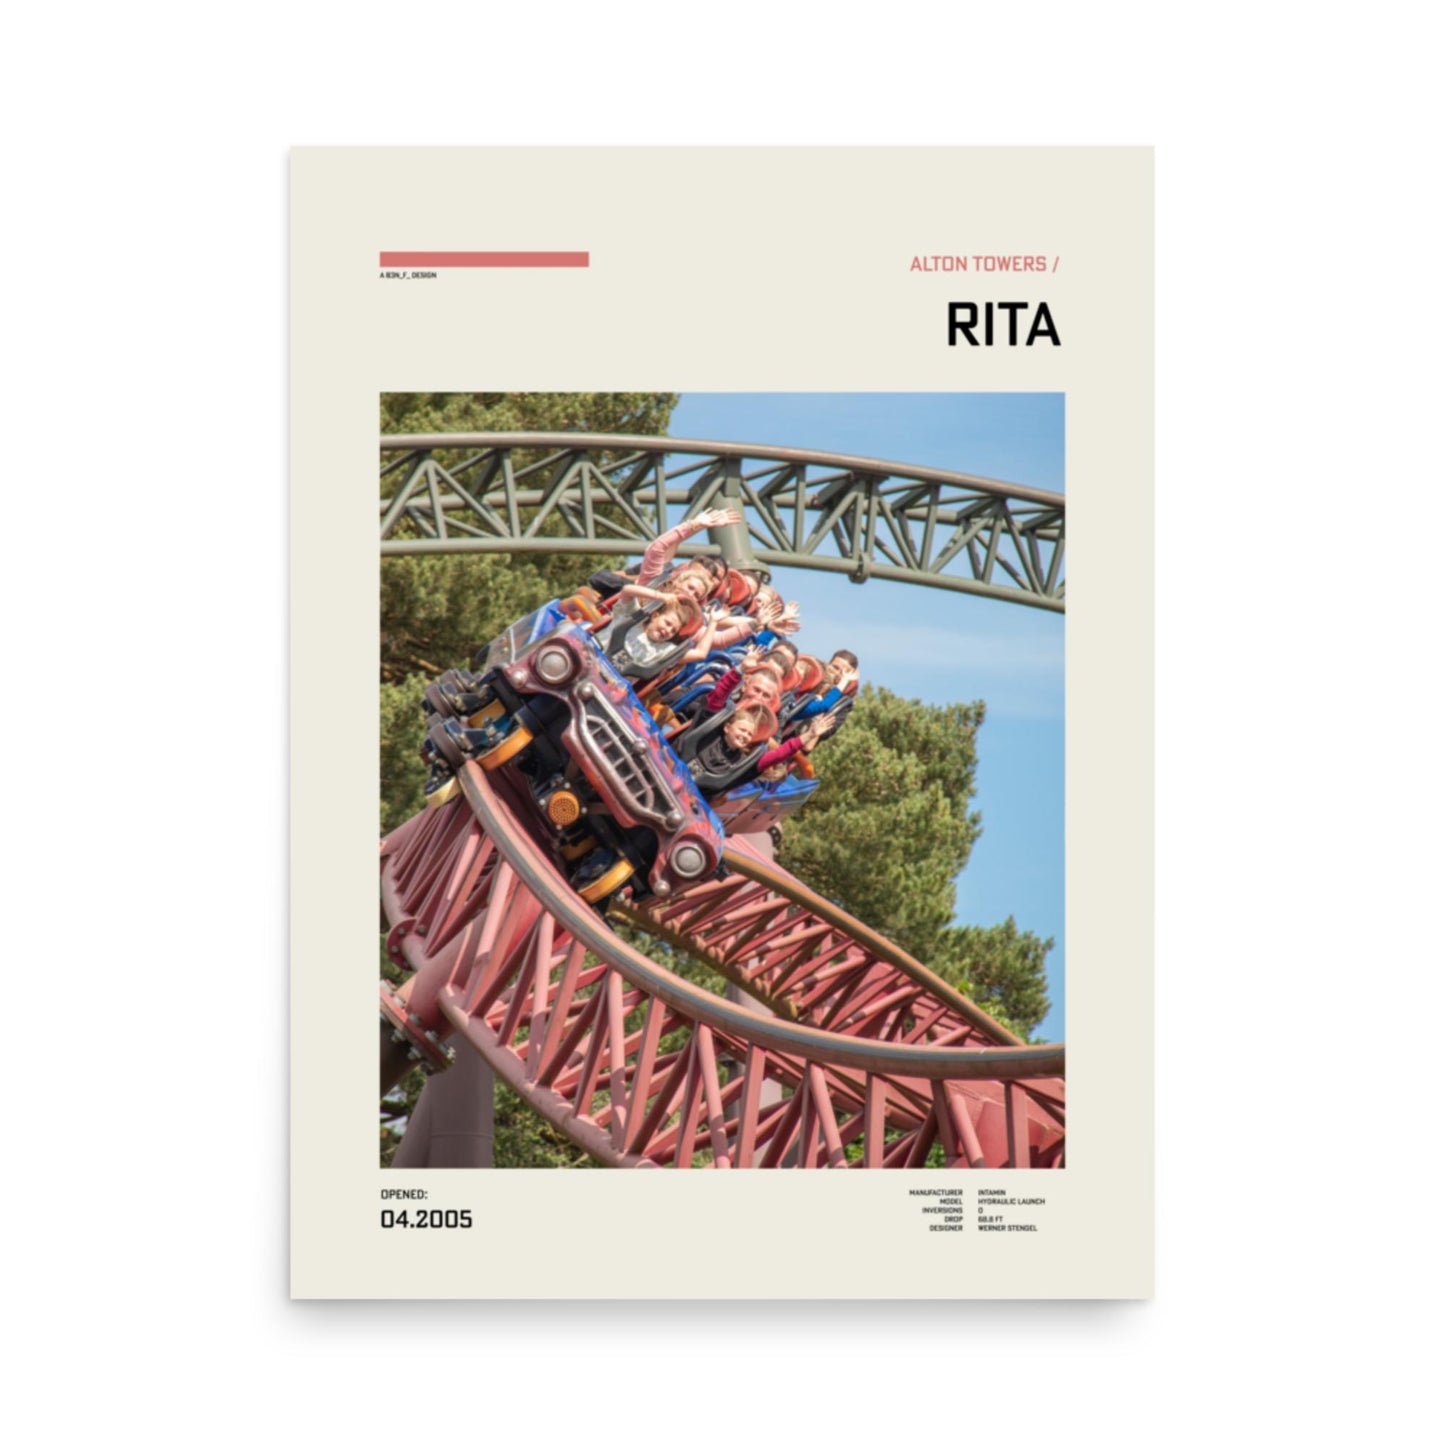 The Queen of Speed: Rita